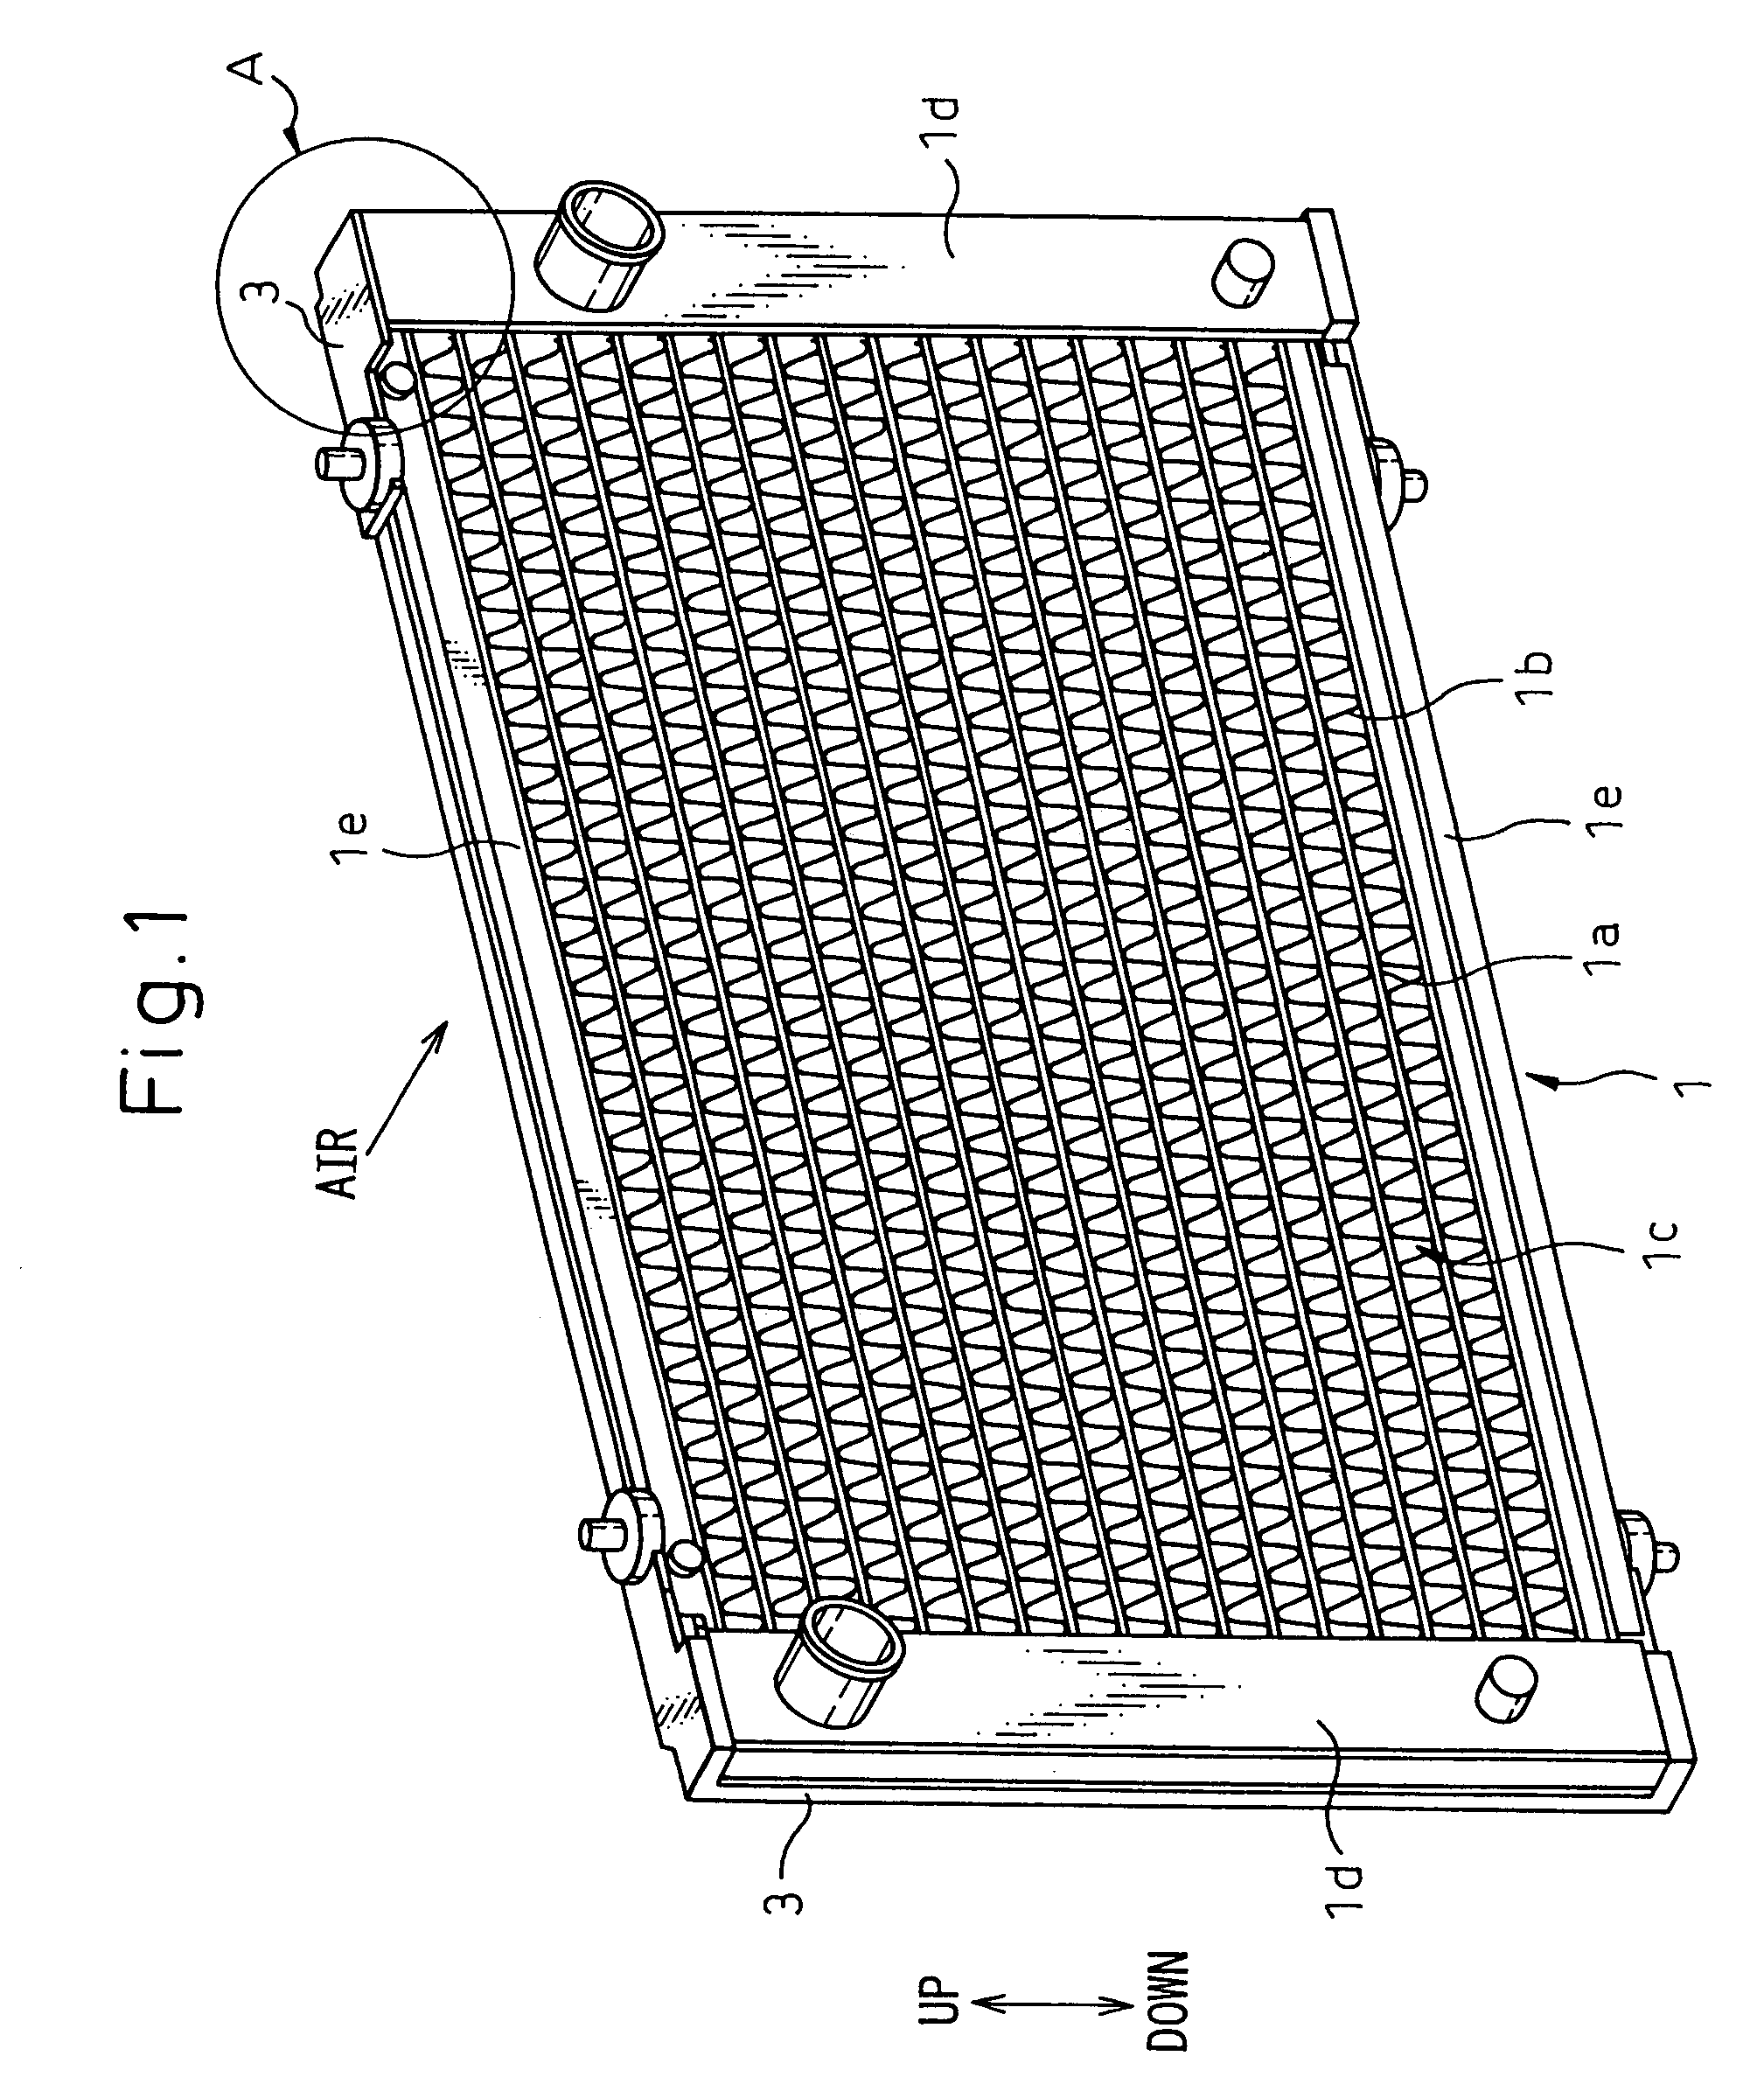 Heat exchanger module